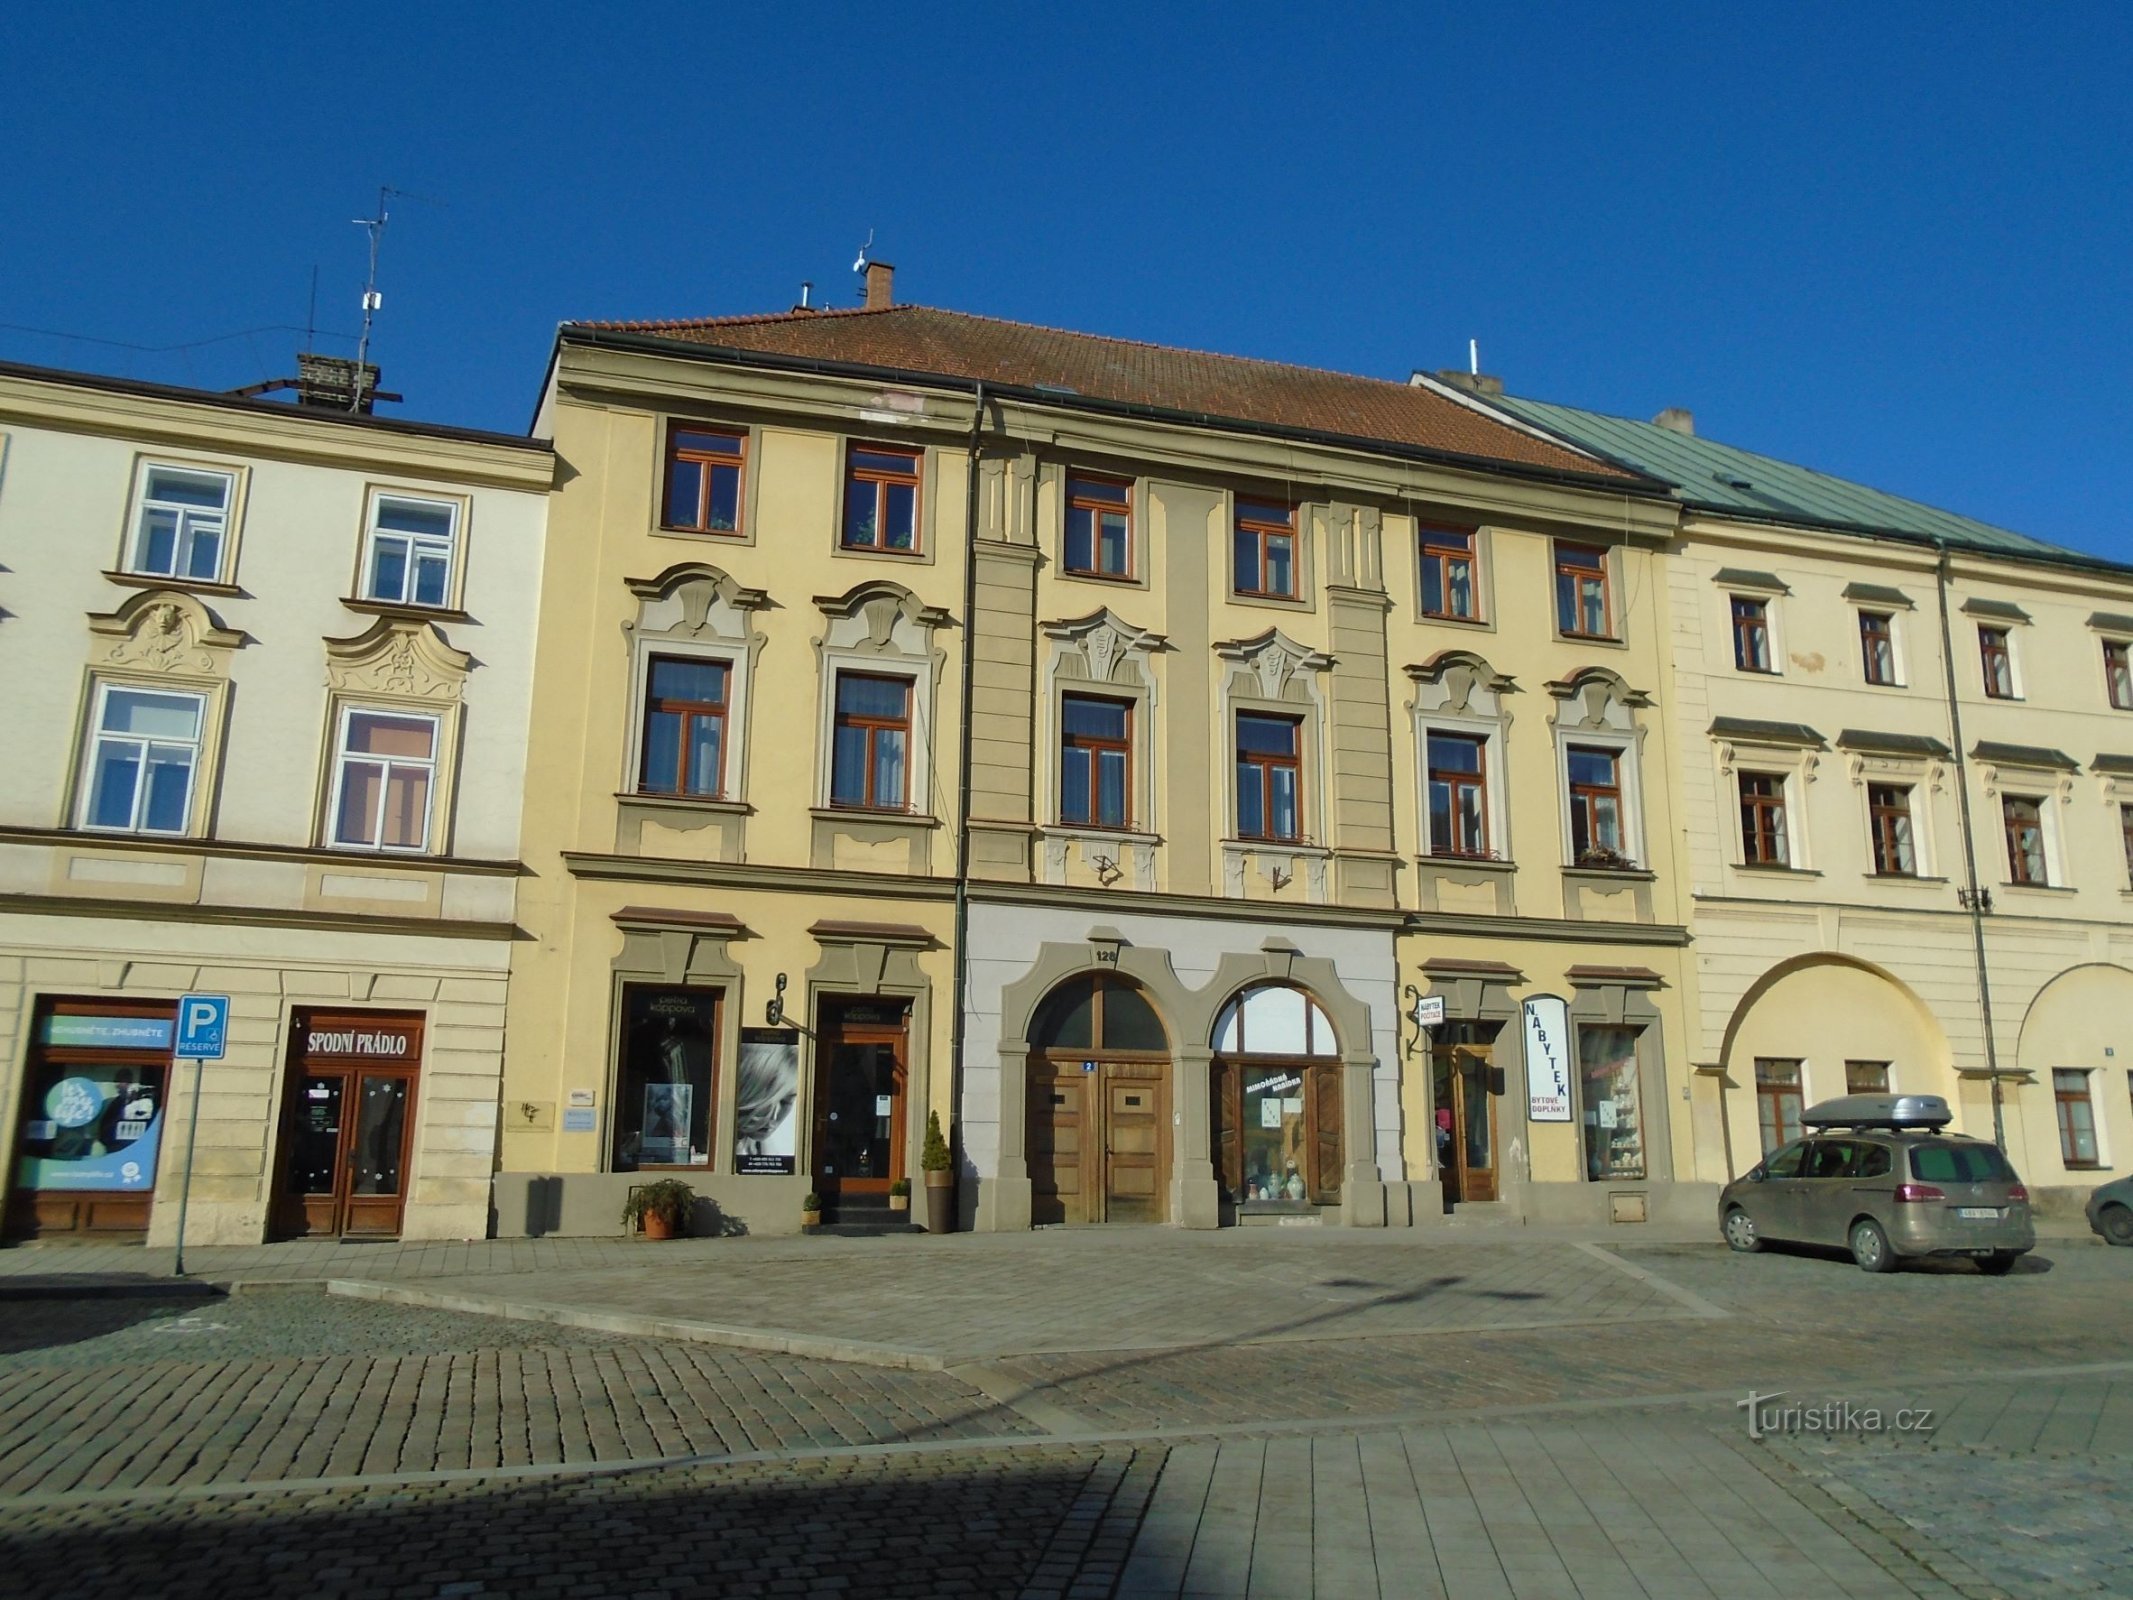 Malé náměstí no. 128 (Hradec Králové, 25.2.2018. huhtikuuta XNUMX)